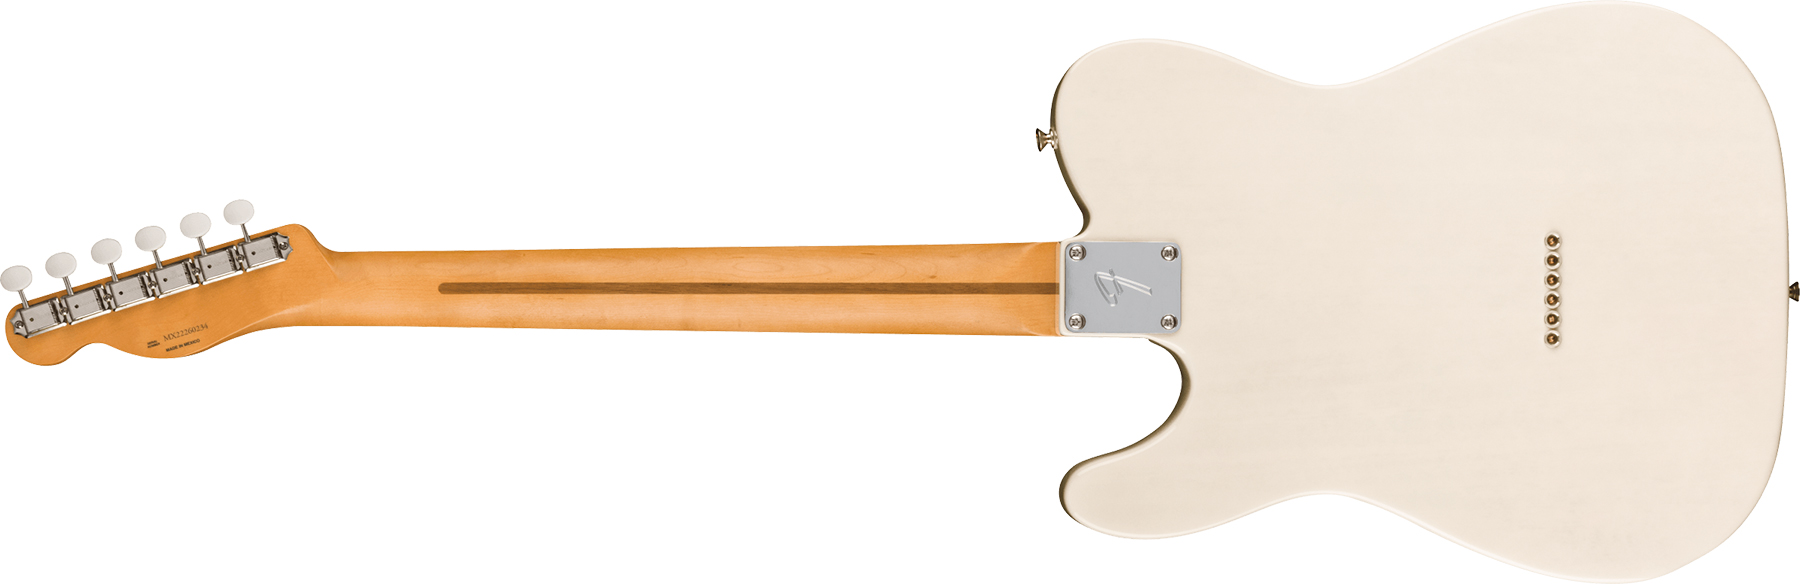 Fender Tele Gold Foil Ltd Mex 2mh Ht Eb - White Blonde - Televorm elektrische gitaar - Variation 1